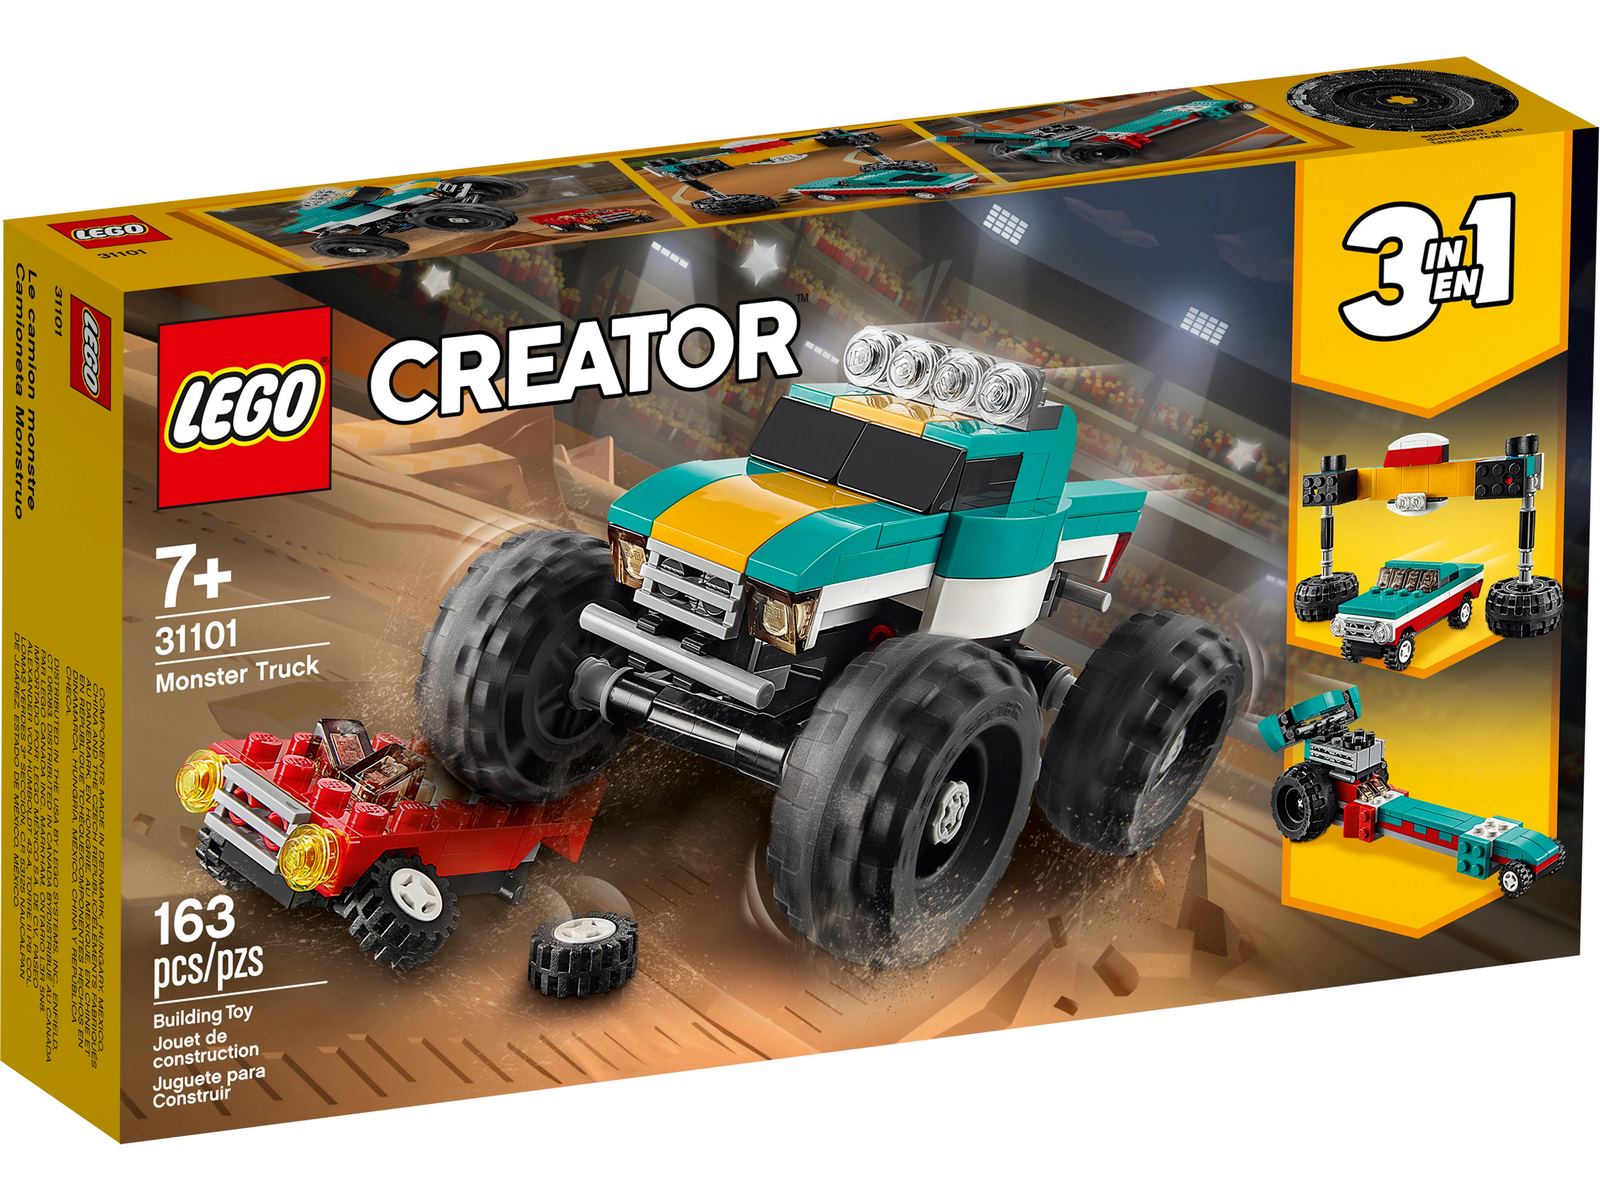 Конструктор LEGO Creator 3в1 «Монстр-трак» 31101 / 163 детали